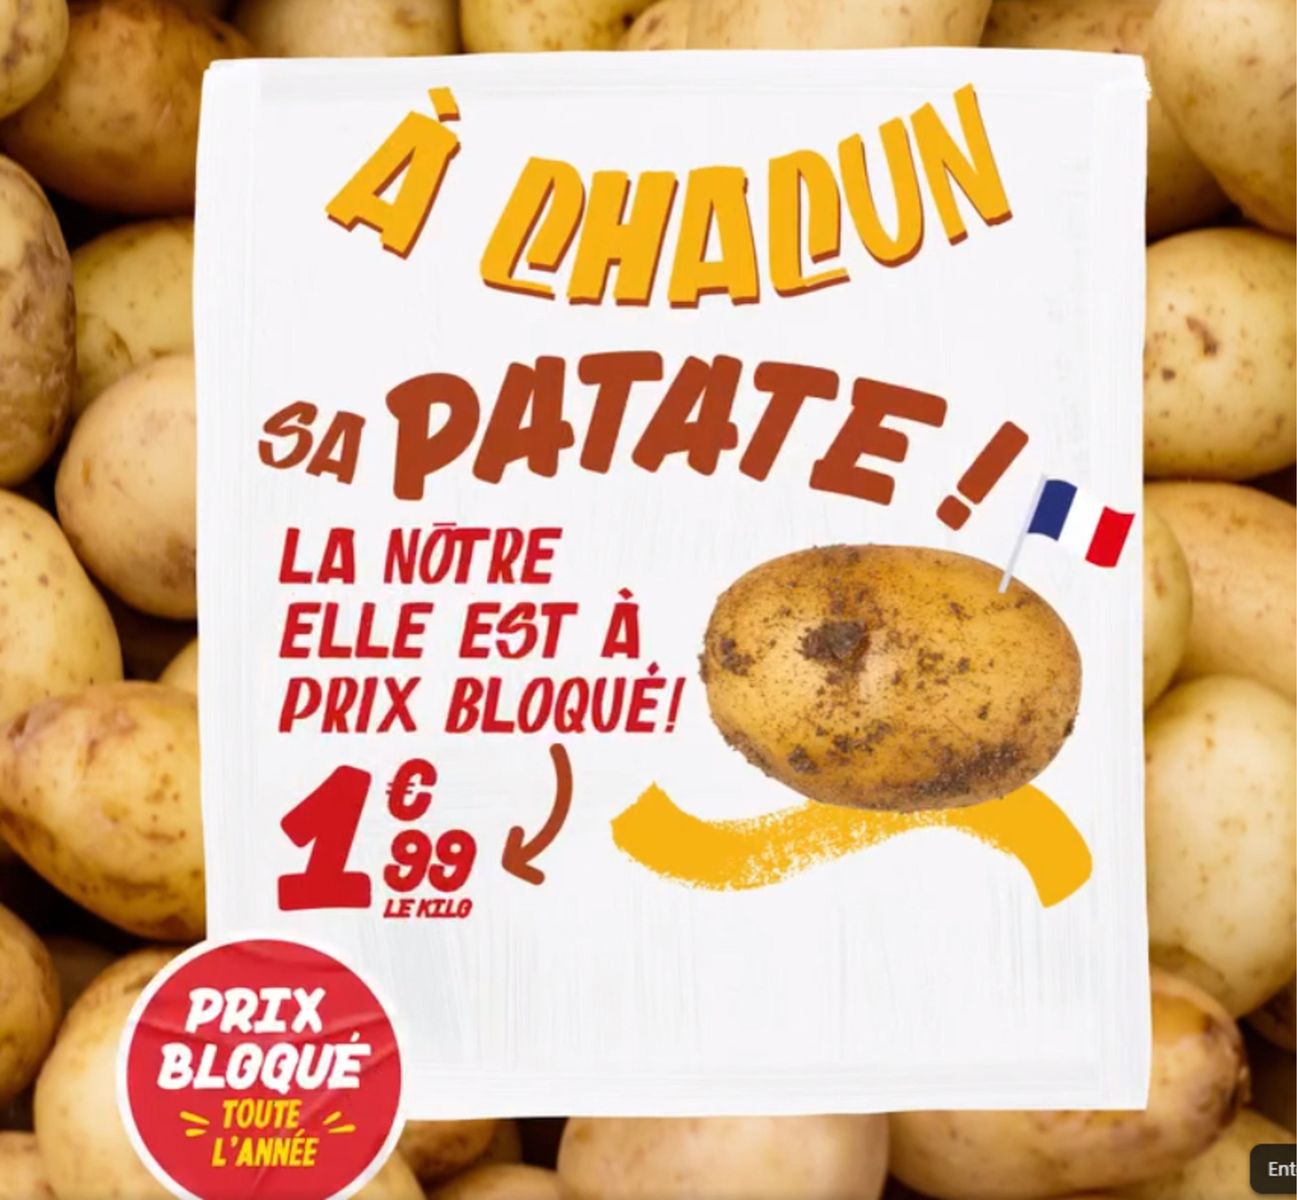 Catalogue Des patates, des patates, des patates !!!, page 00001